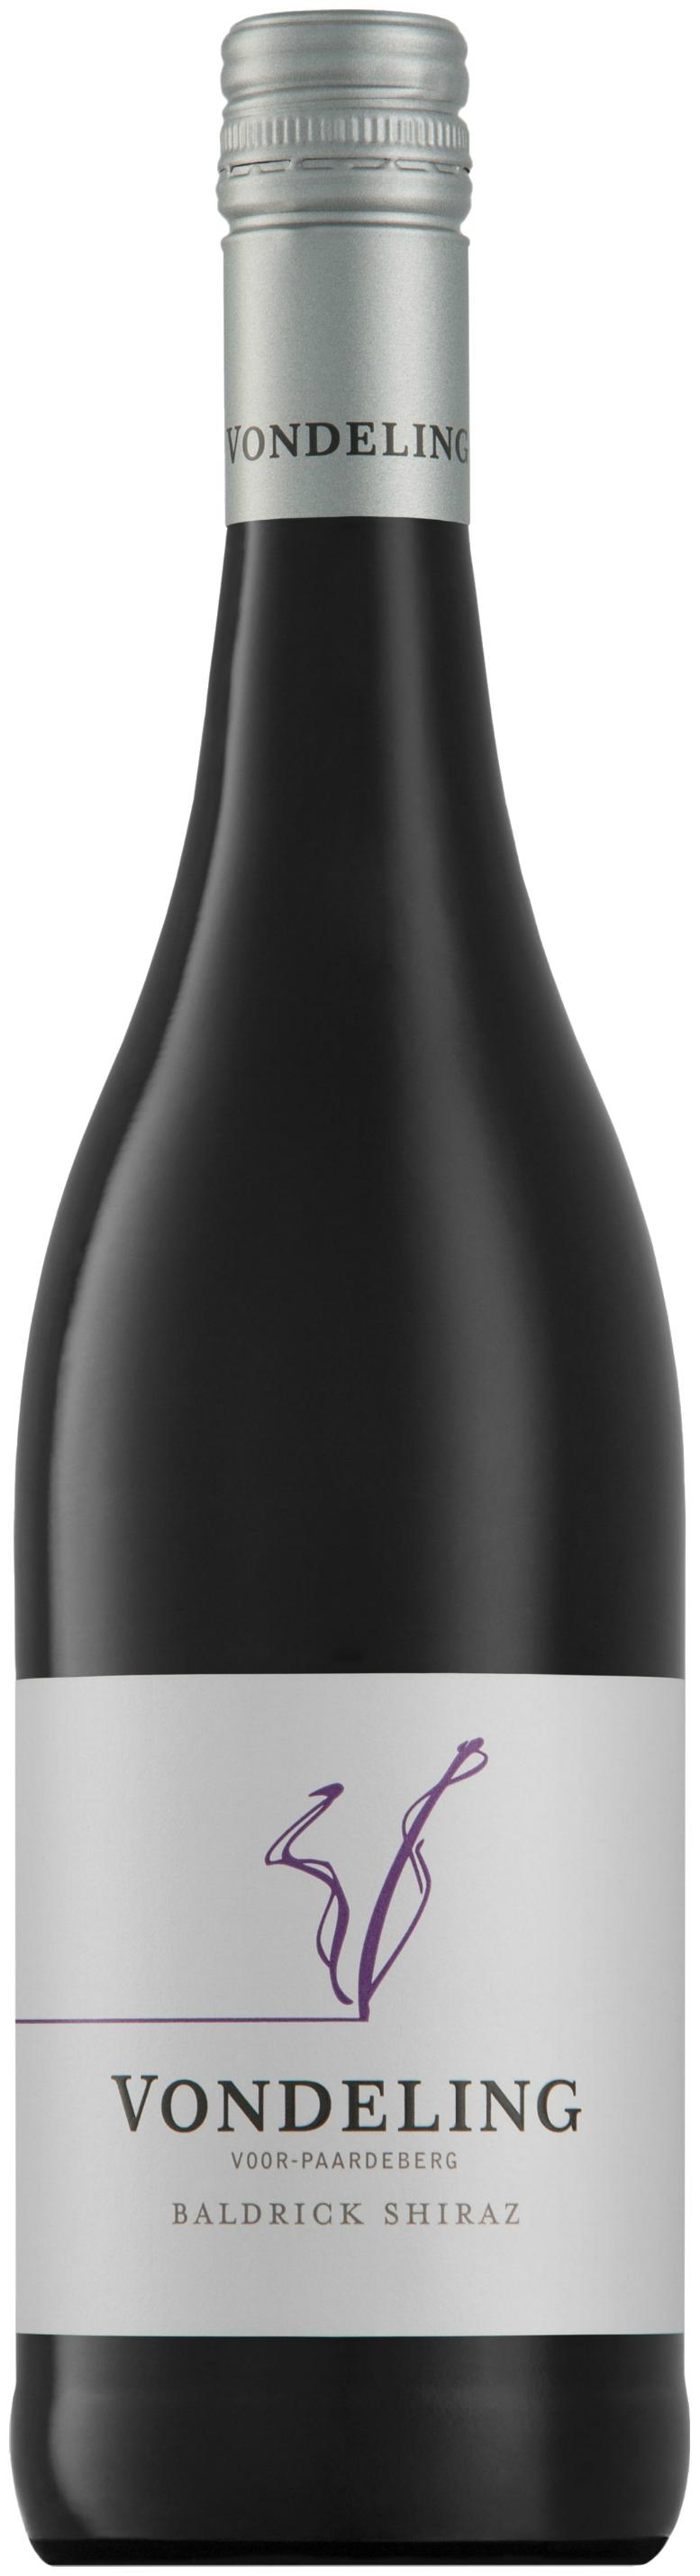 Vondeling Baldrick Shiraz (Rotwein, Südafrika, Paarl) | Curry Premium Wines  oHG